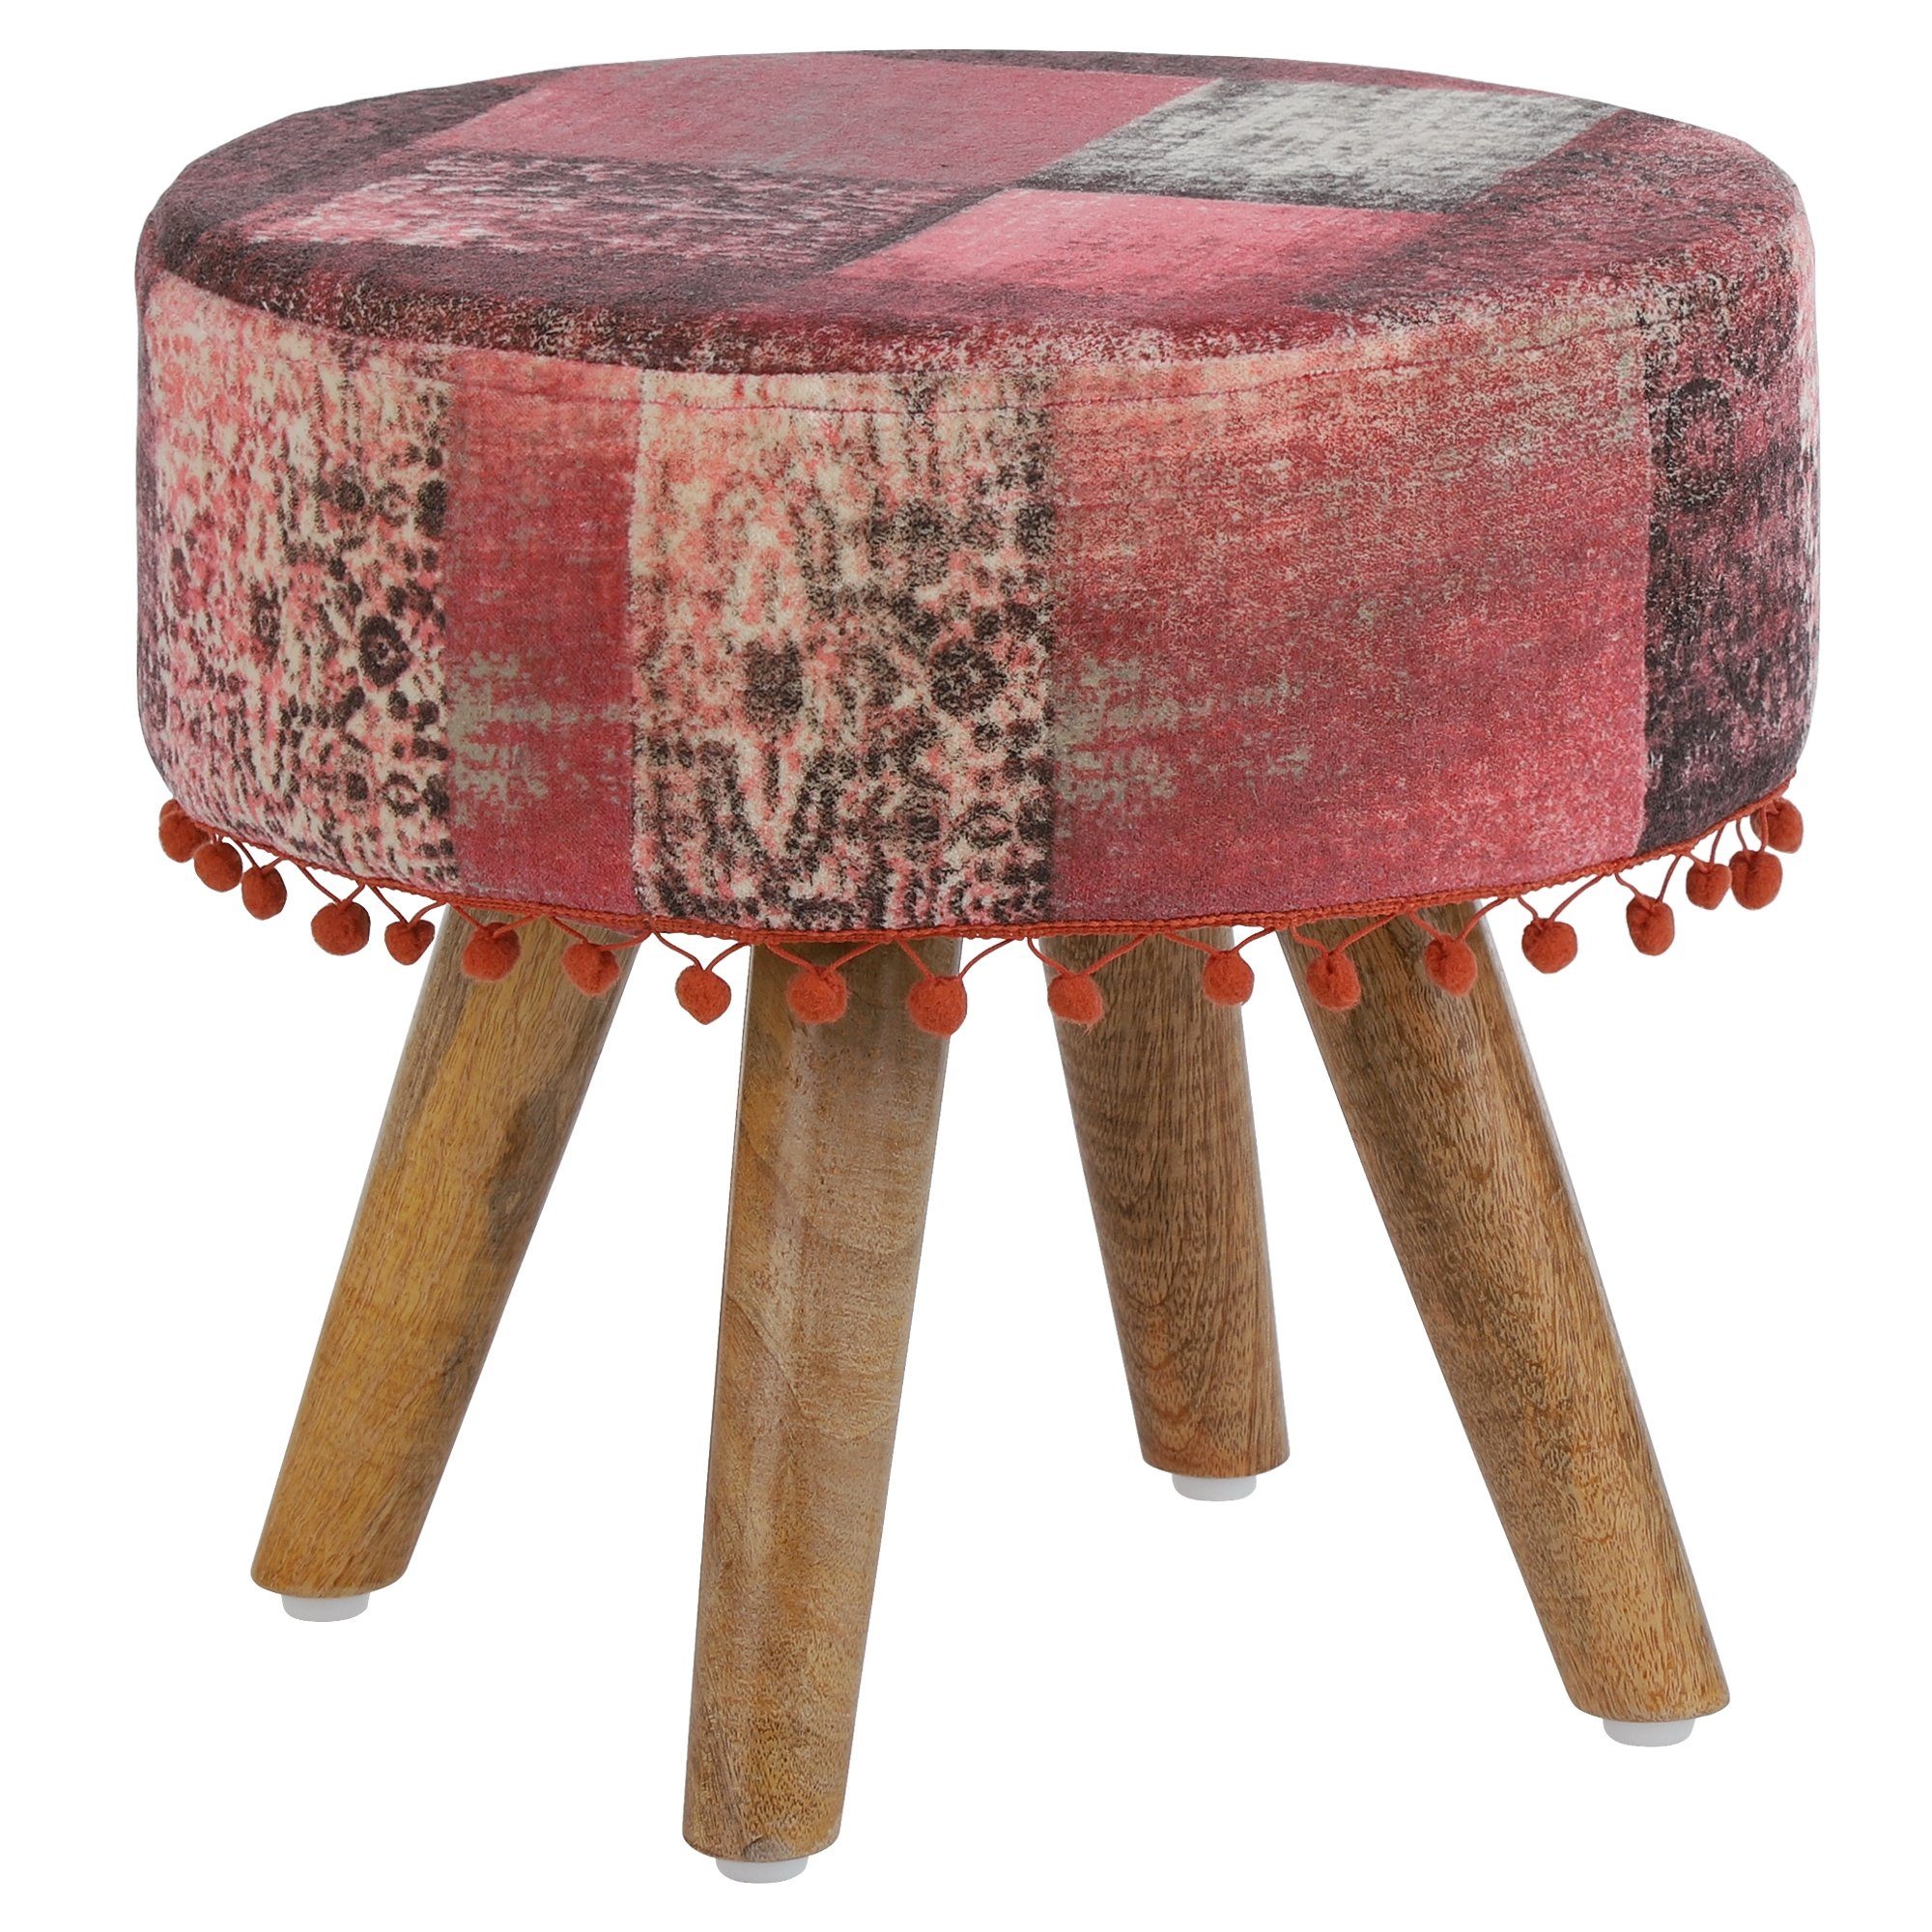 WOMO-DESIGN Hocker Sitzhocker, Polsterhocker rund mit Holzbeine, Stoffbezug, 38 x 36 cm Rot